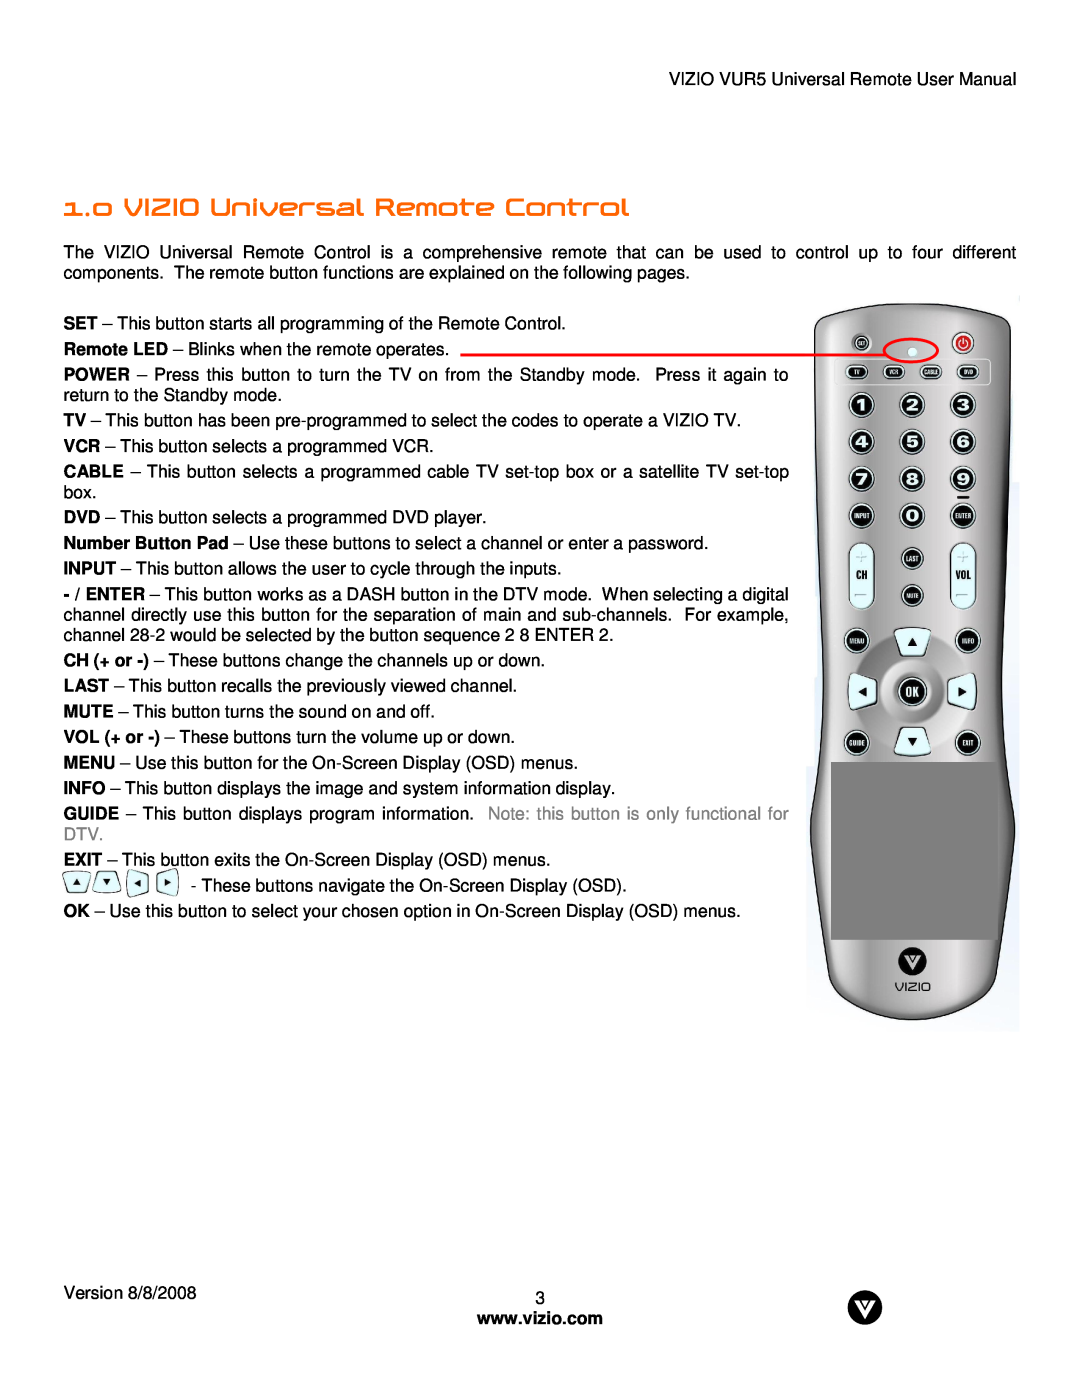 Vizio VUR5 manual VIZIO Universal Remote Control 